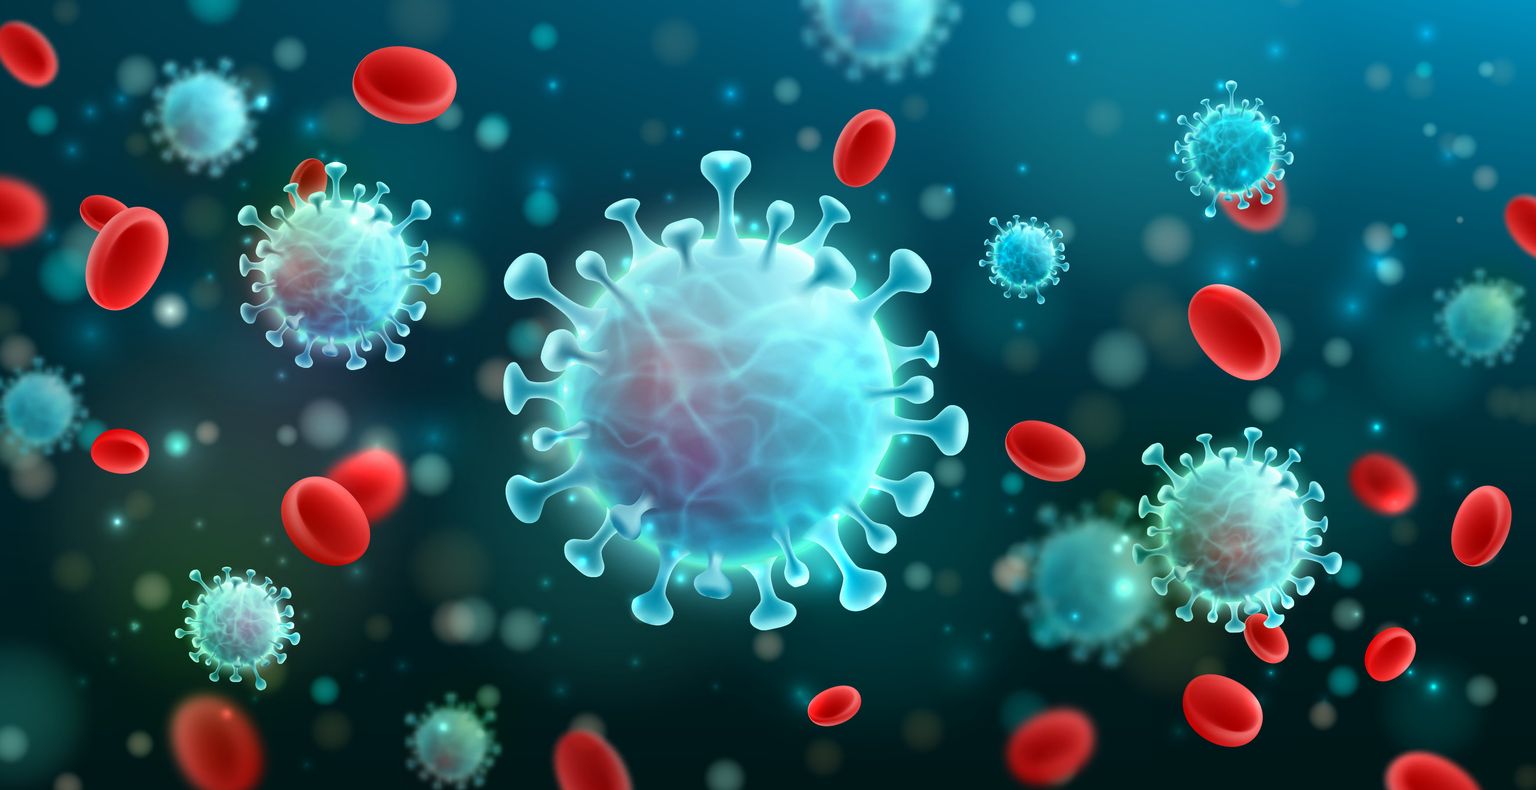 Ilustración vectorial de coronavirus 2019-nCoV y fondo de virus con células de la enfermedad y glóbulos rojos.COVID-19 brote del virus de la corona y concepto de pandemia para la atención médica